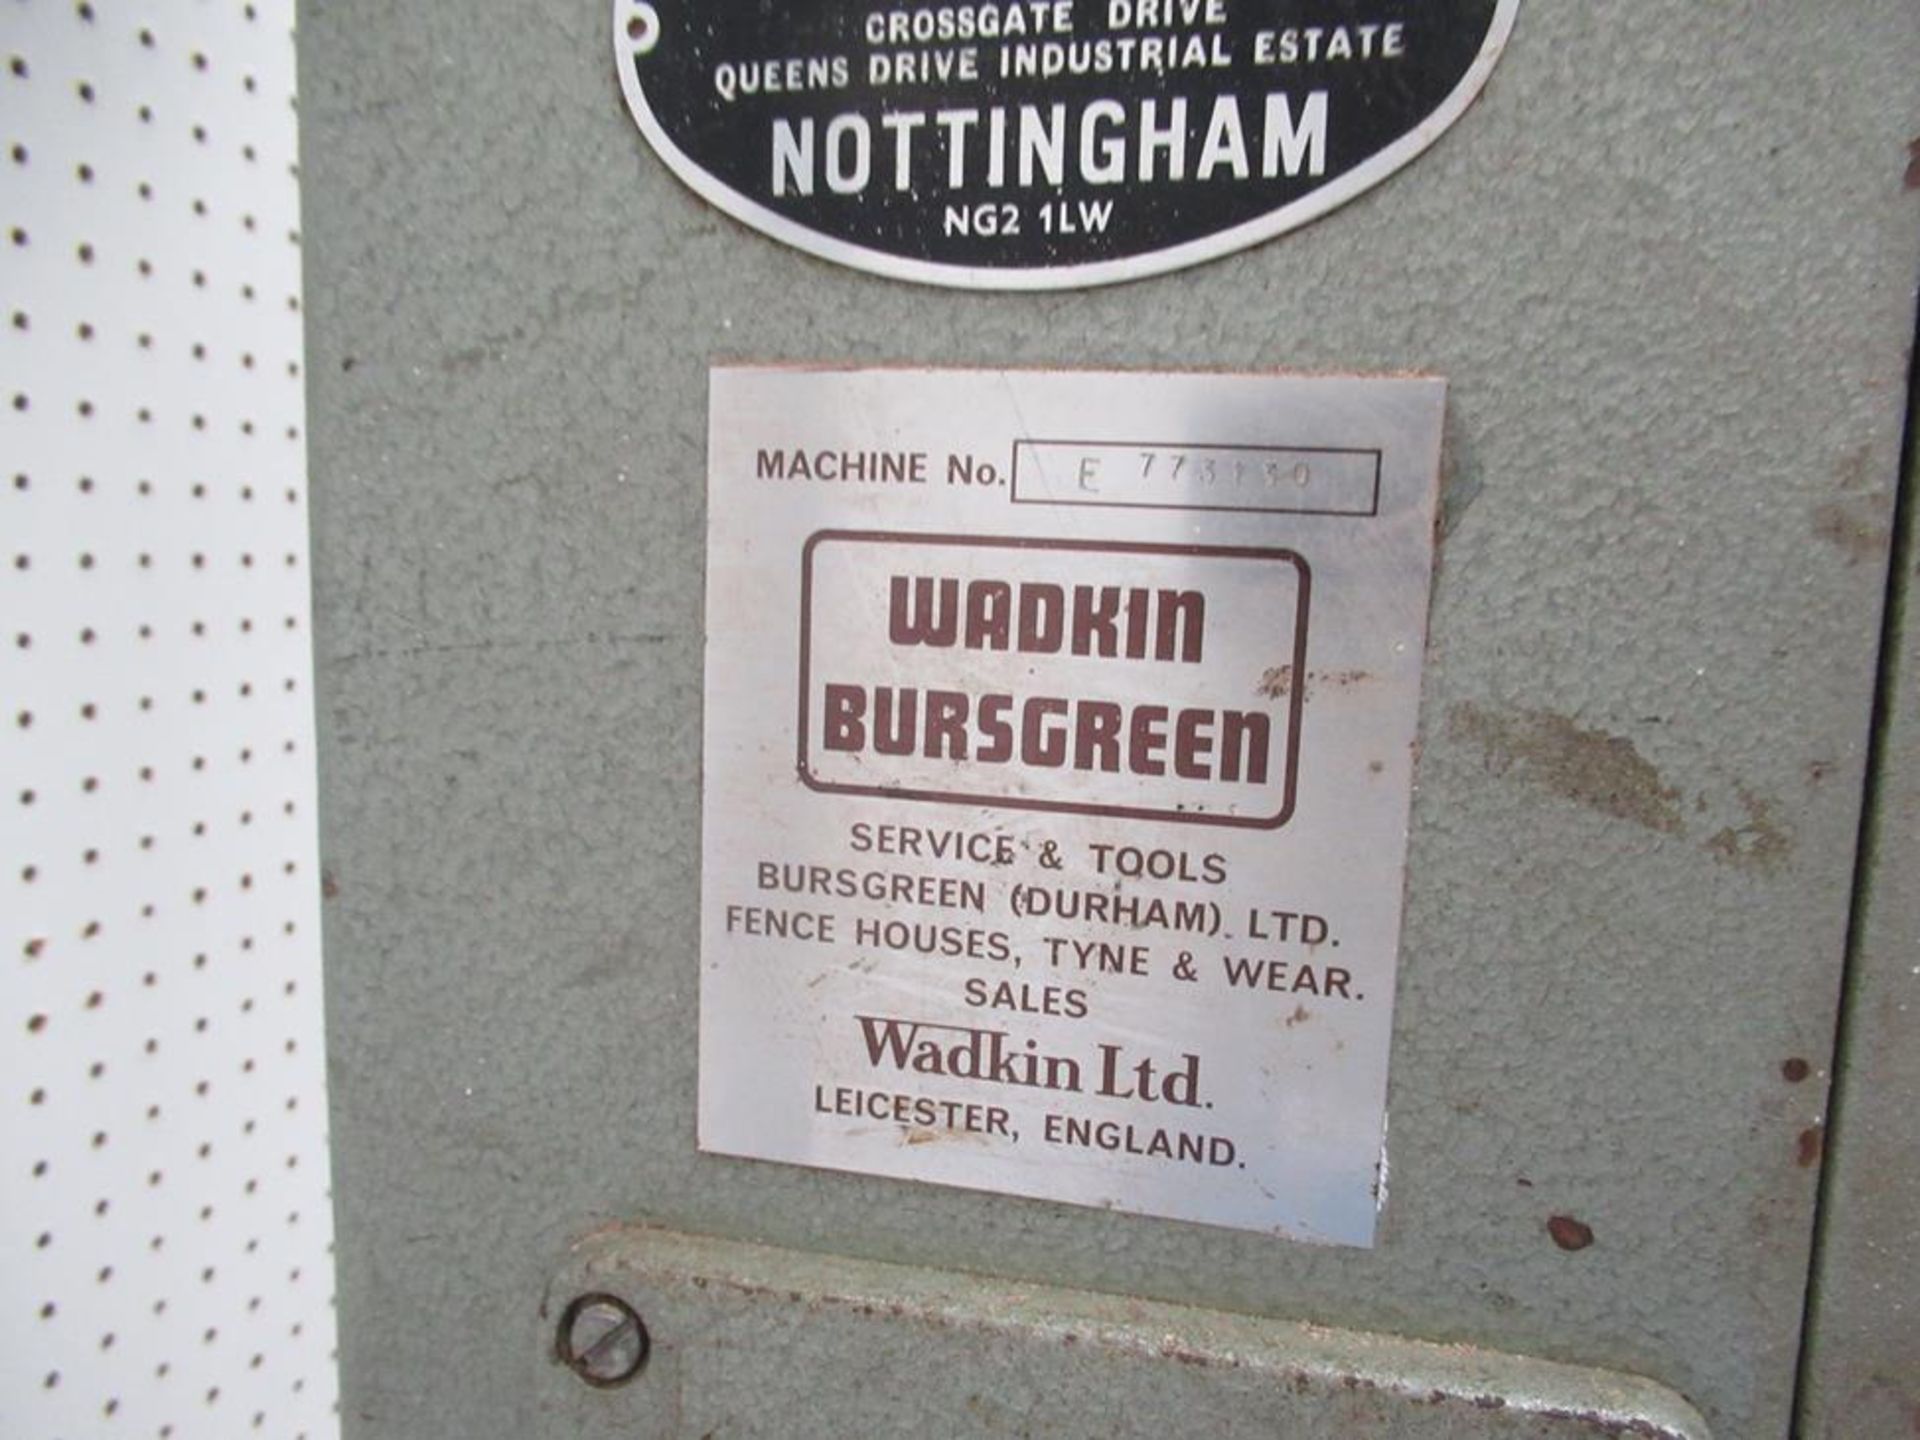 Wadkin Bursgreen vertical bandsaw 240V, No. E773130 - Image 6 of 8